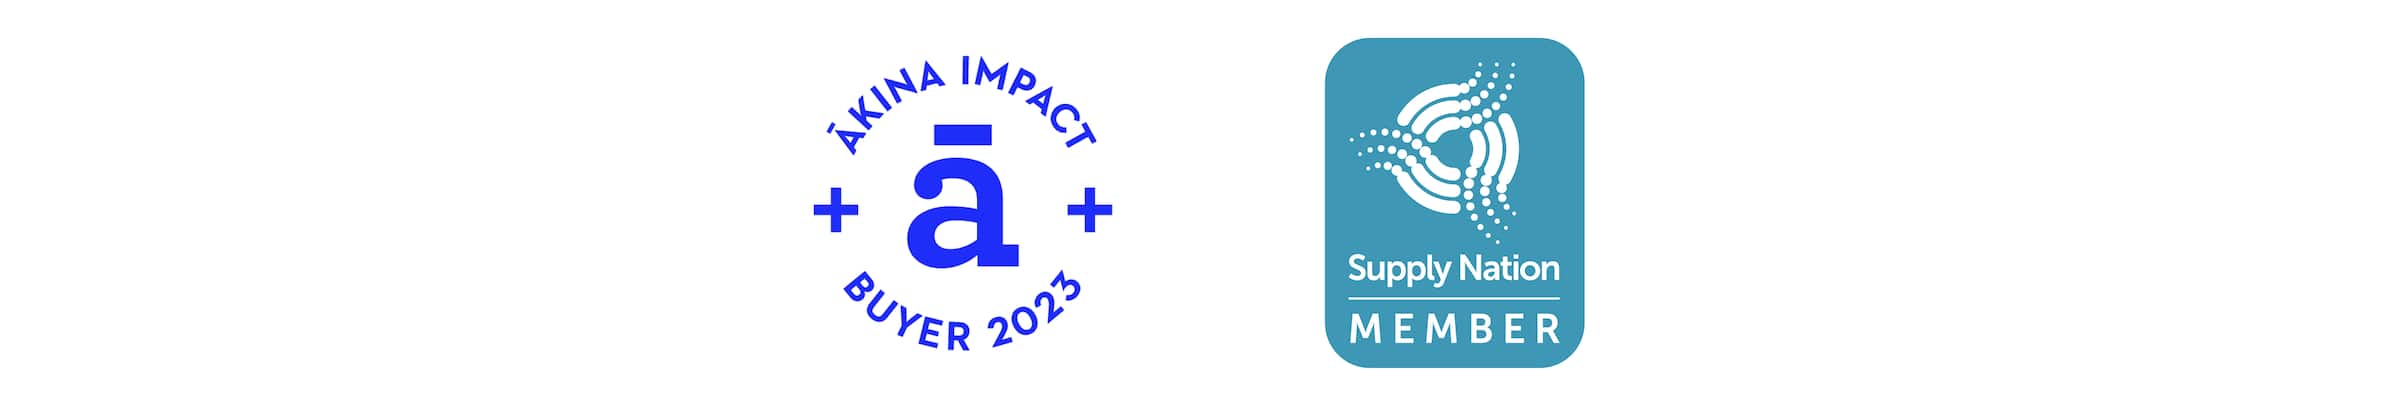 Image of Akina and Supply Nation logos